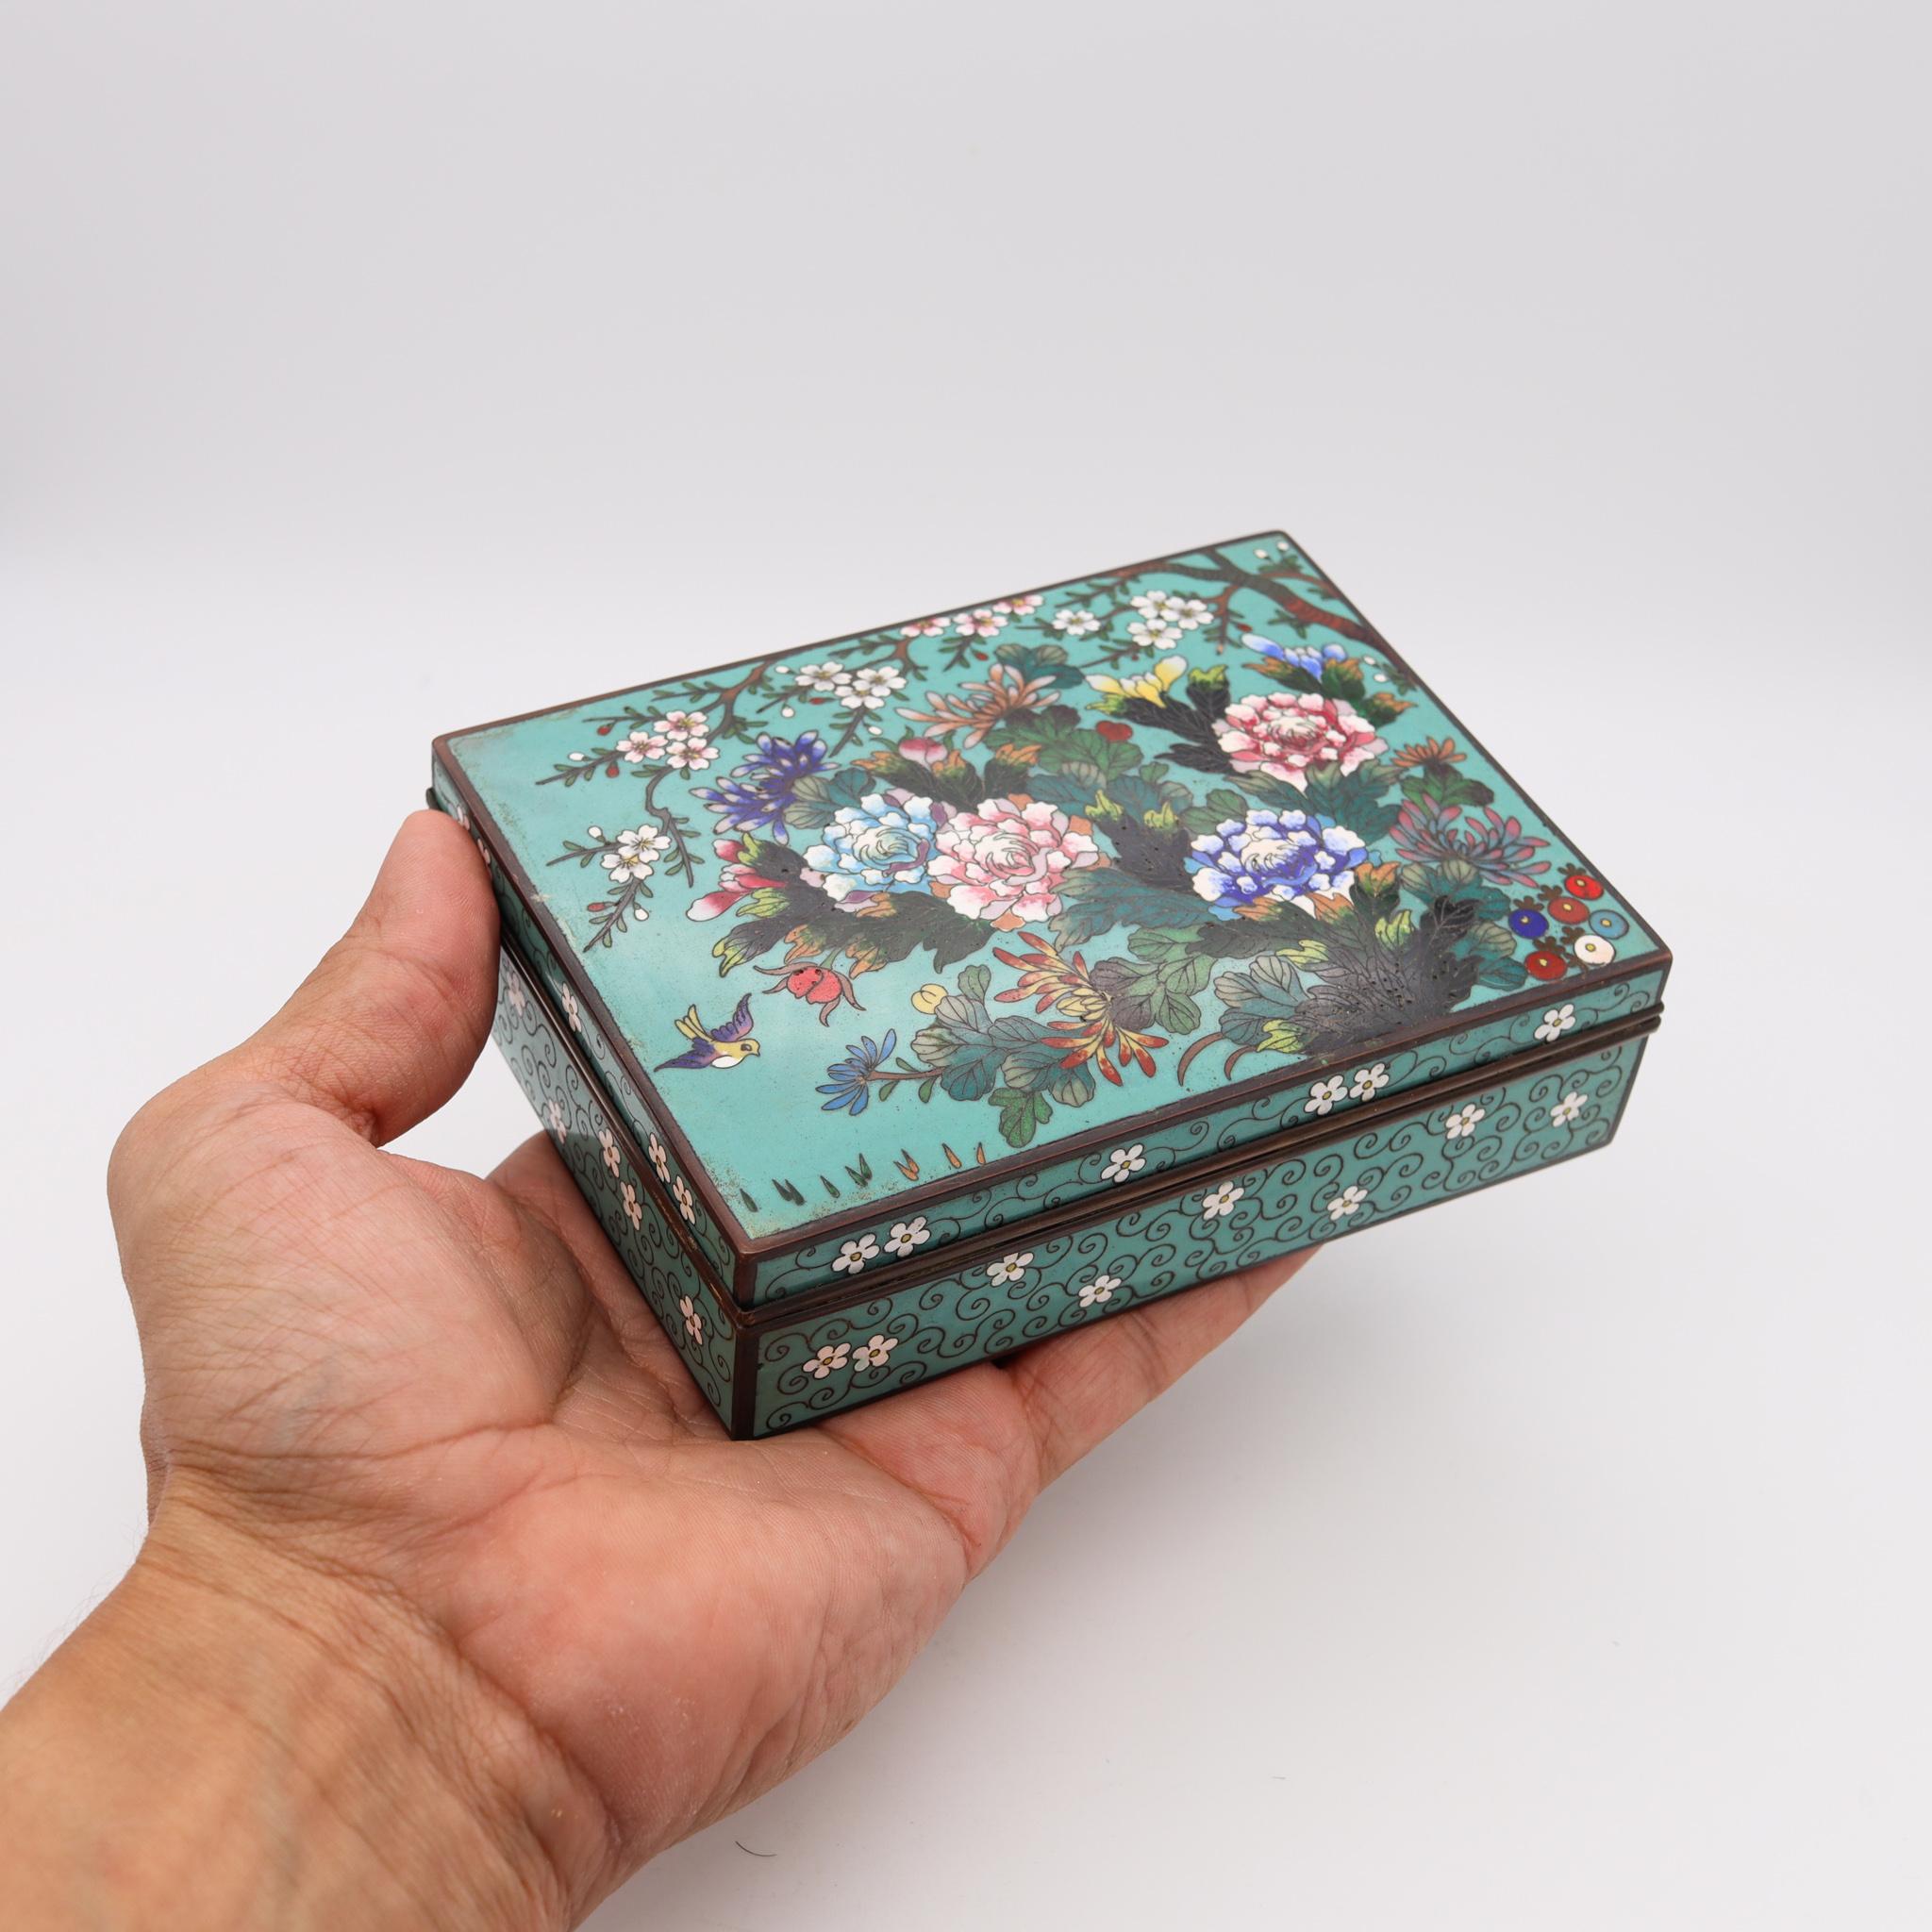 Cloissoné Japan 1890 Meiji Period Rectangular Bronze Box with Colorful Enamel Cloisonne